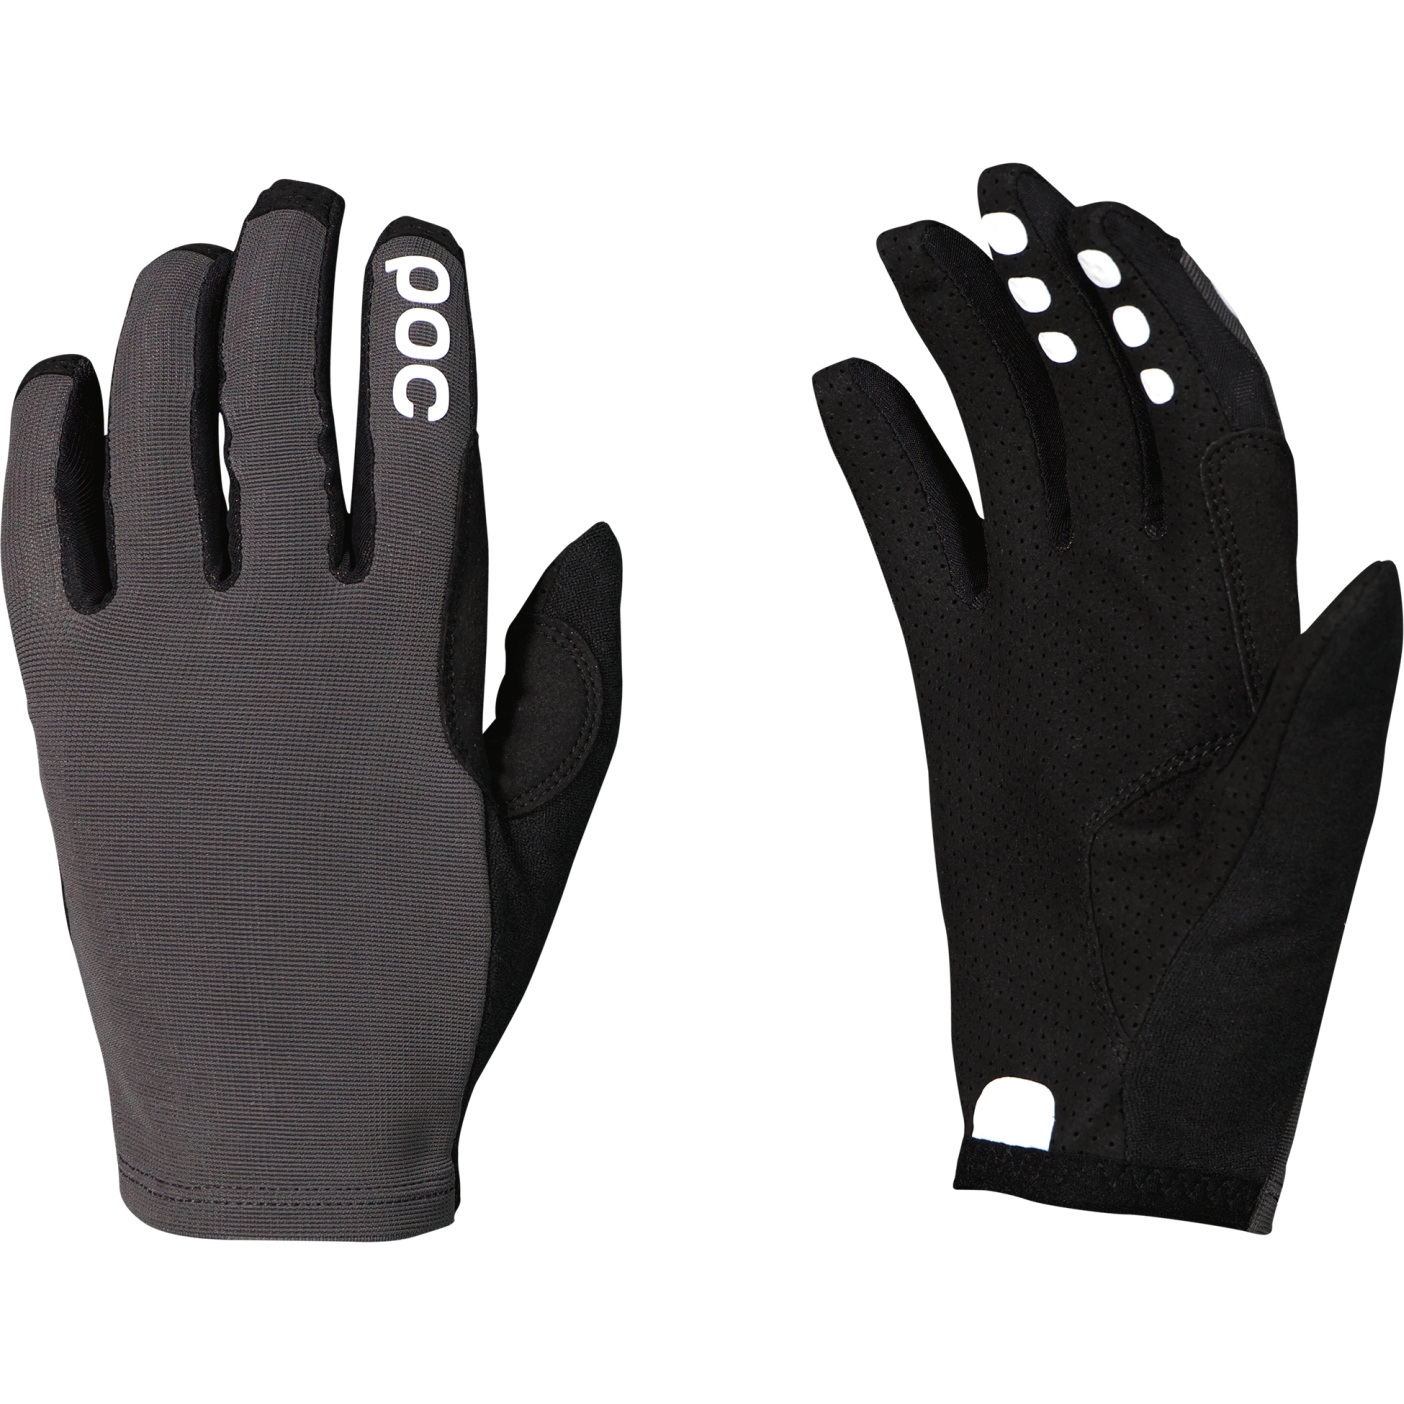 Produktbild von POC Resistance Enduro Handschuhe - 1043 Sylvanite Grey